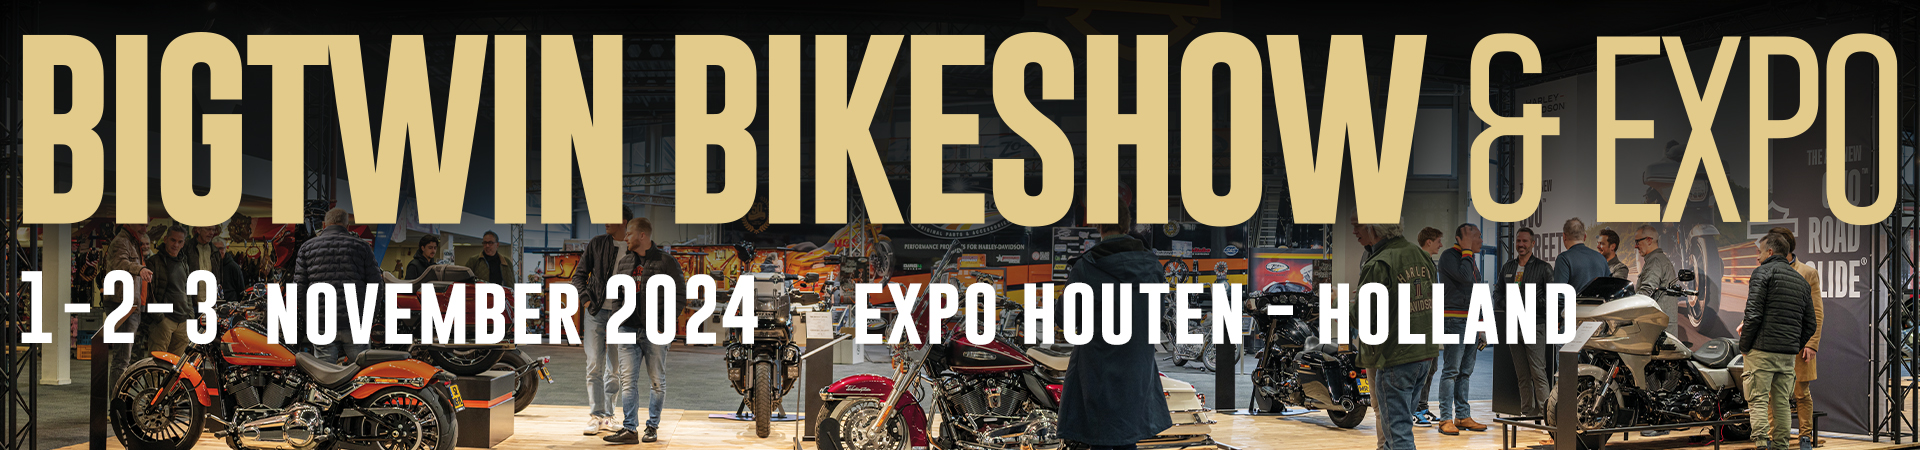 Bigtwin Bikeshow & Expo 2024